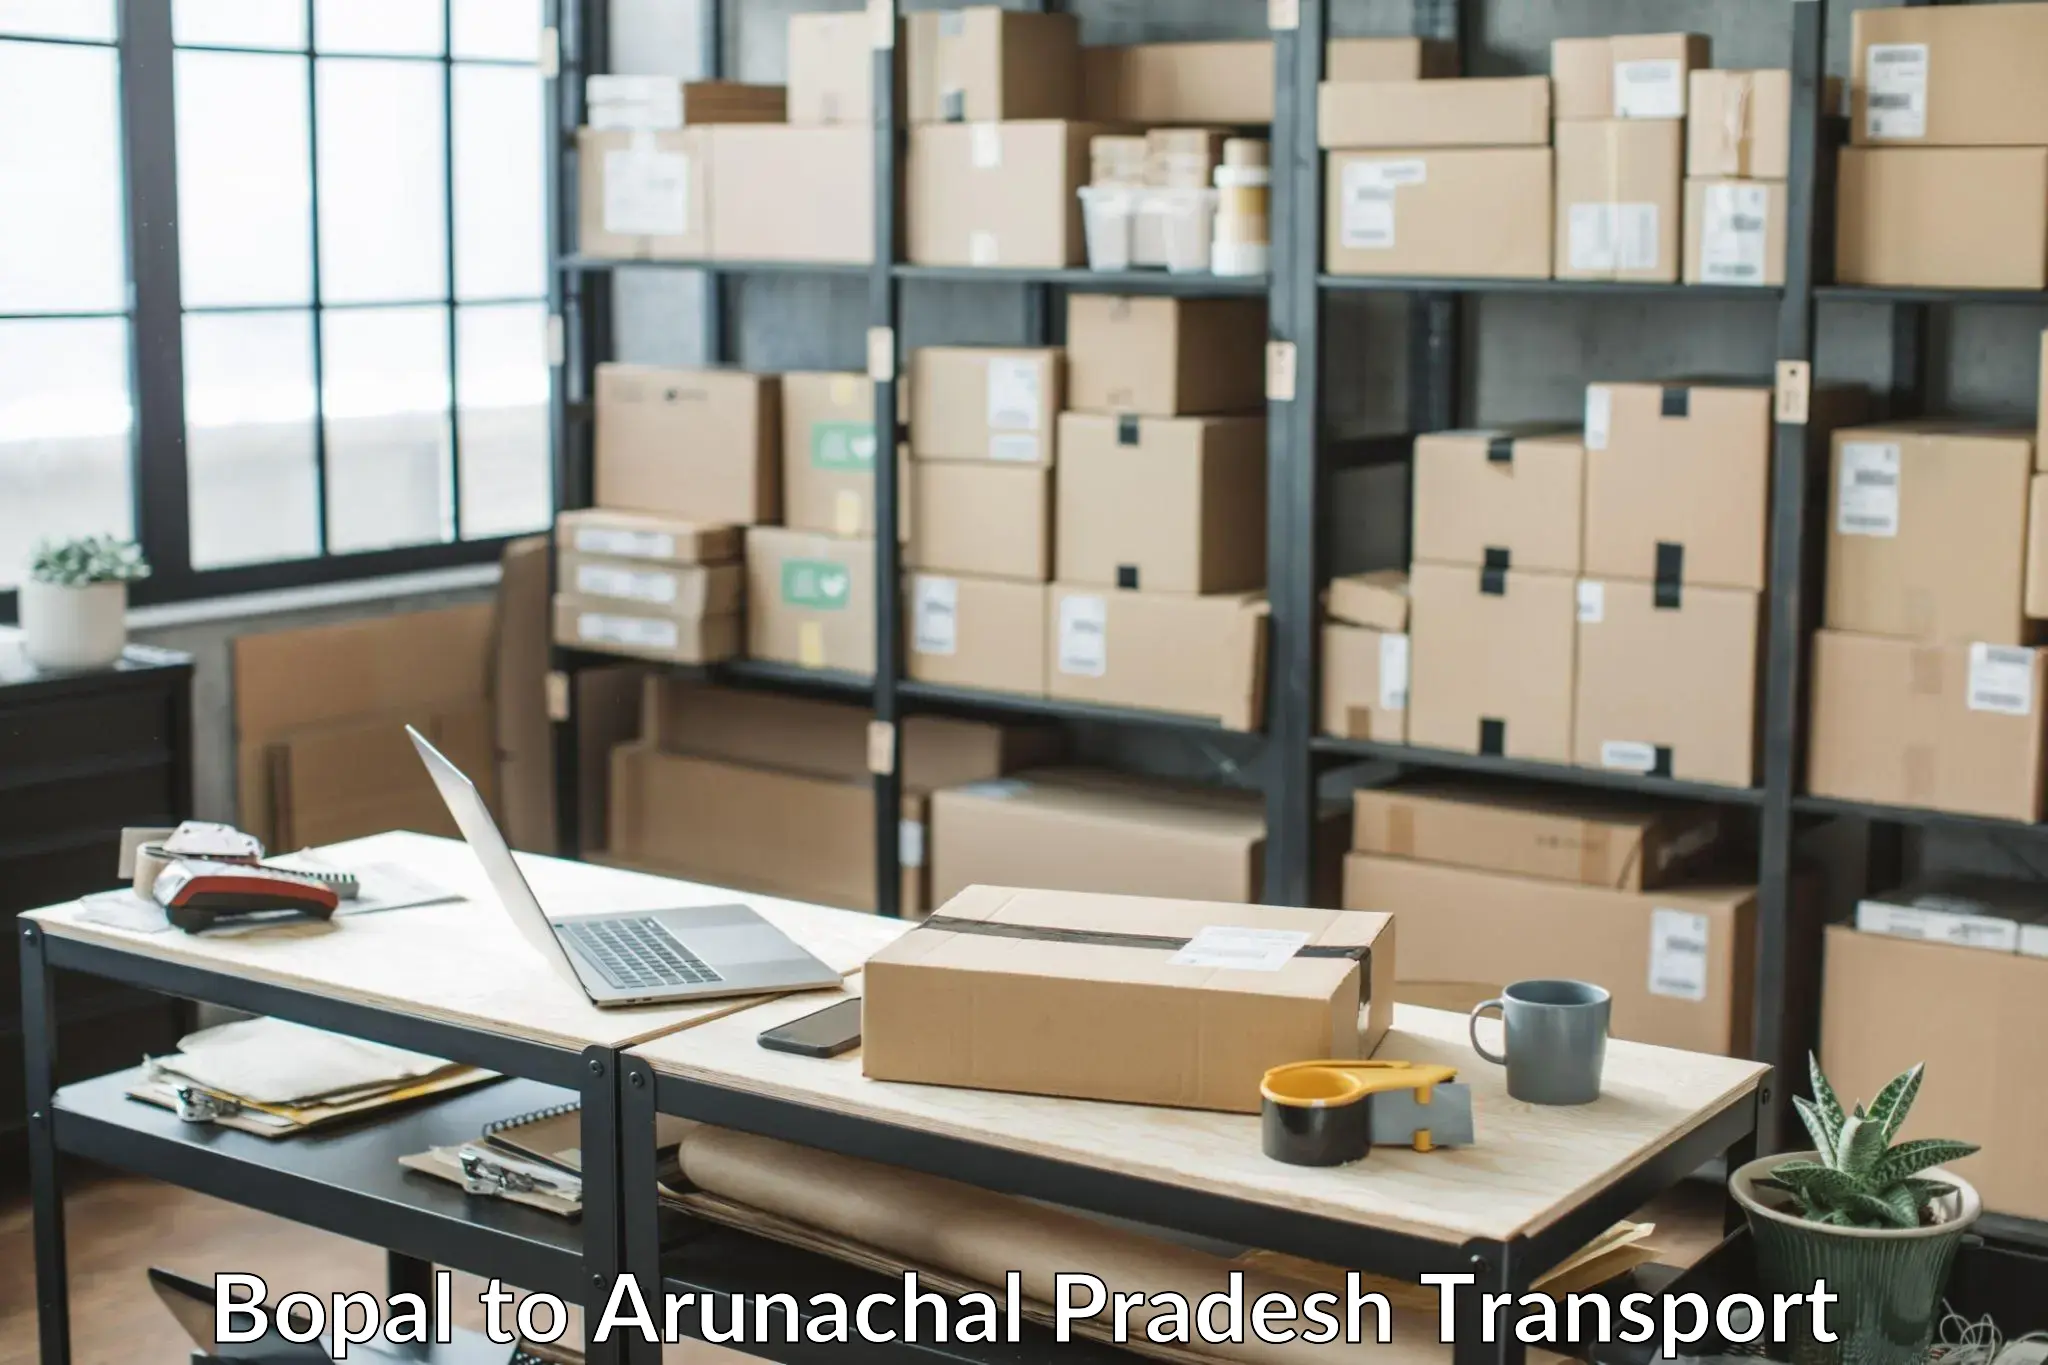 Nearest transport service Bopal to Arunachal Pradesh